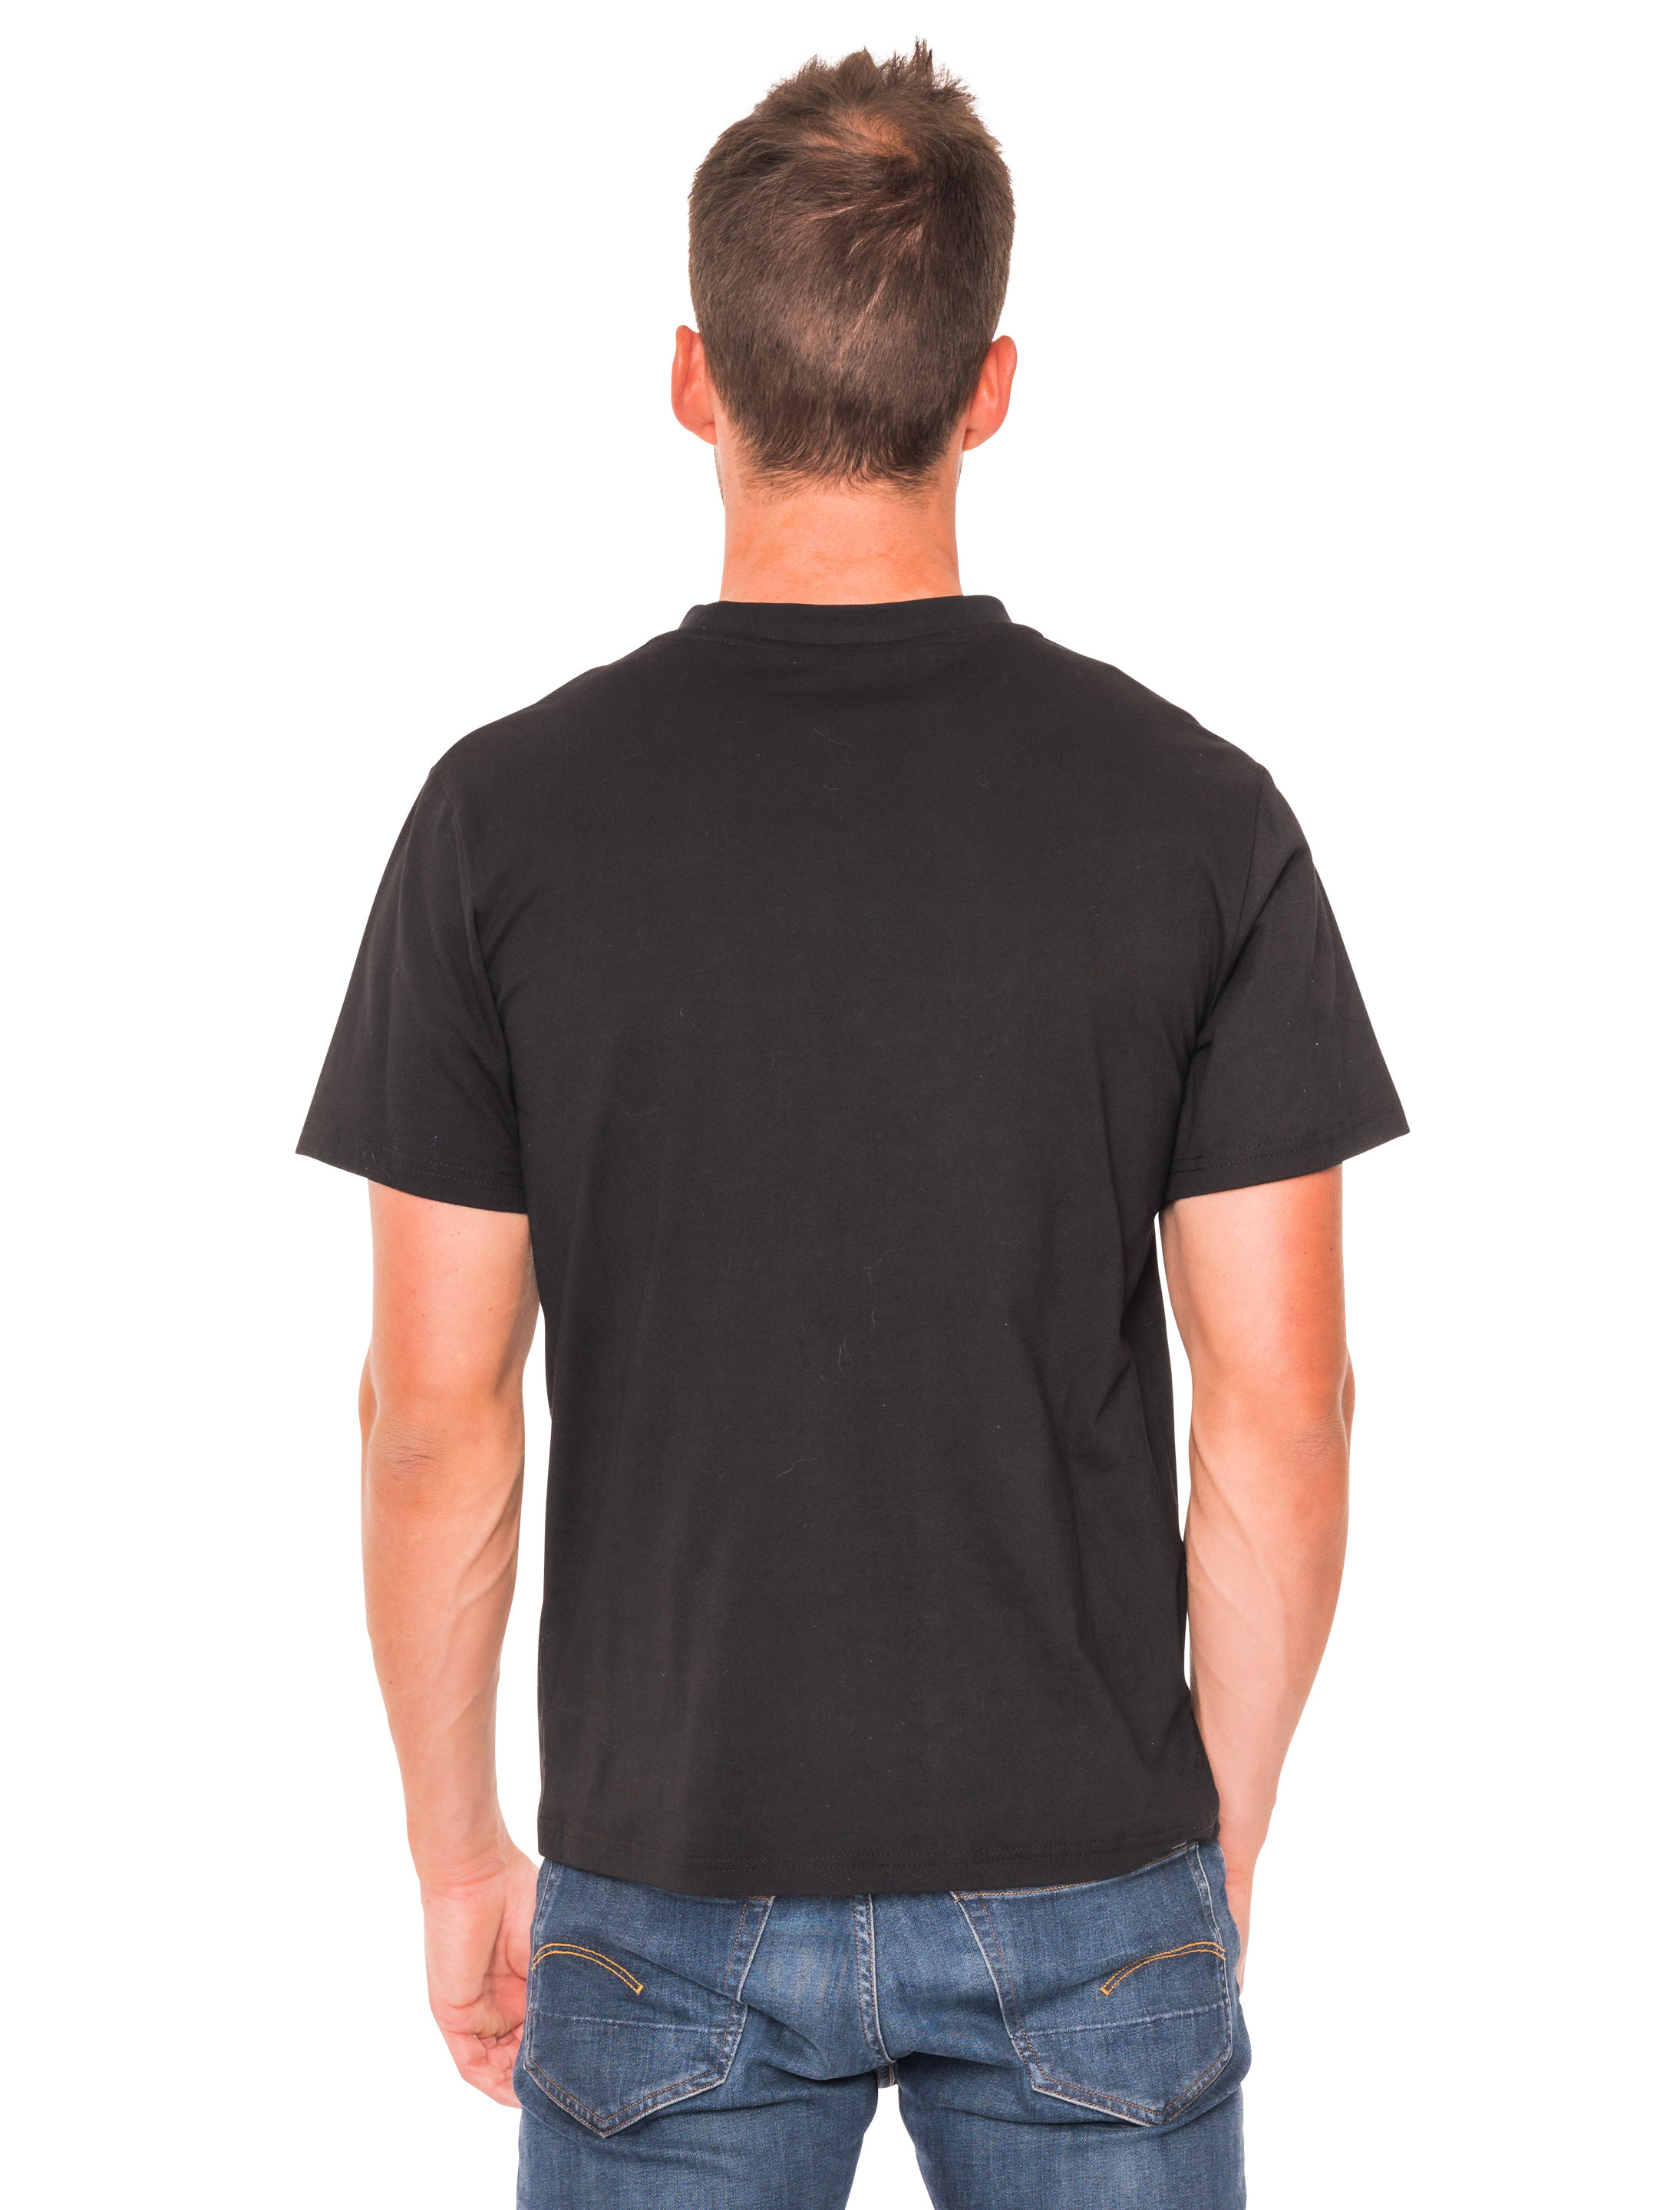 T-Shirt 90er Jahre Herren schwarz 3XL